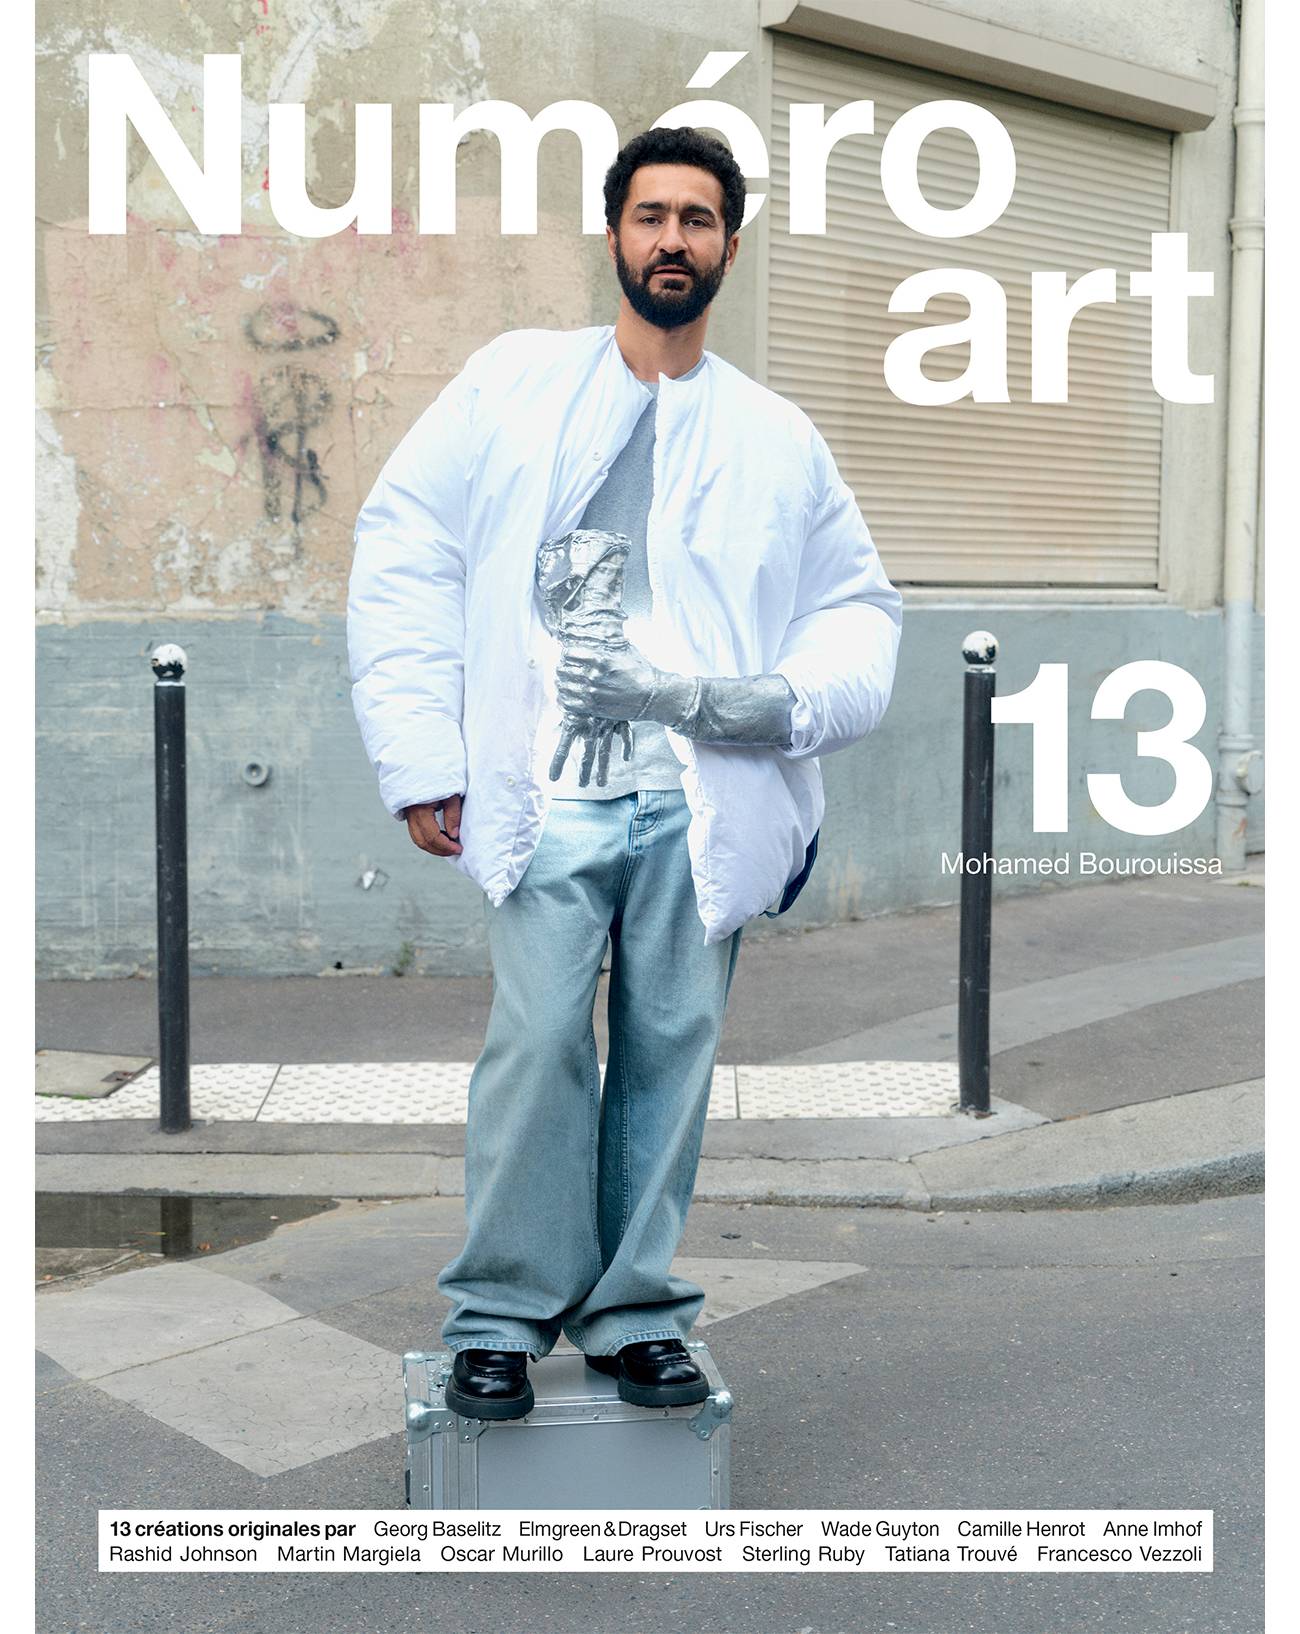 Qui est Mohamed Bourouissa, l'un des plus grands artistes de sa génération en couverture de Numéro art 13 ?